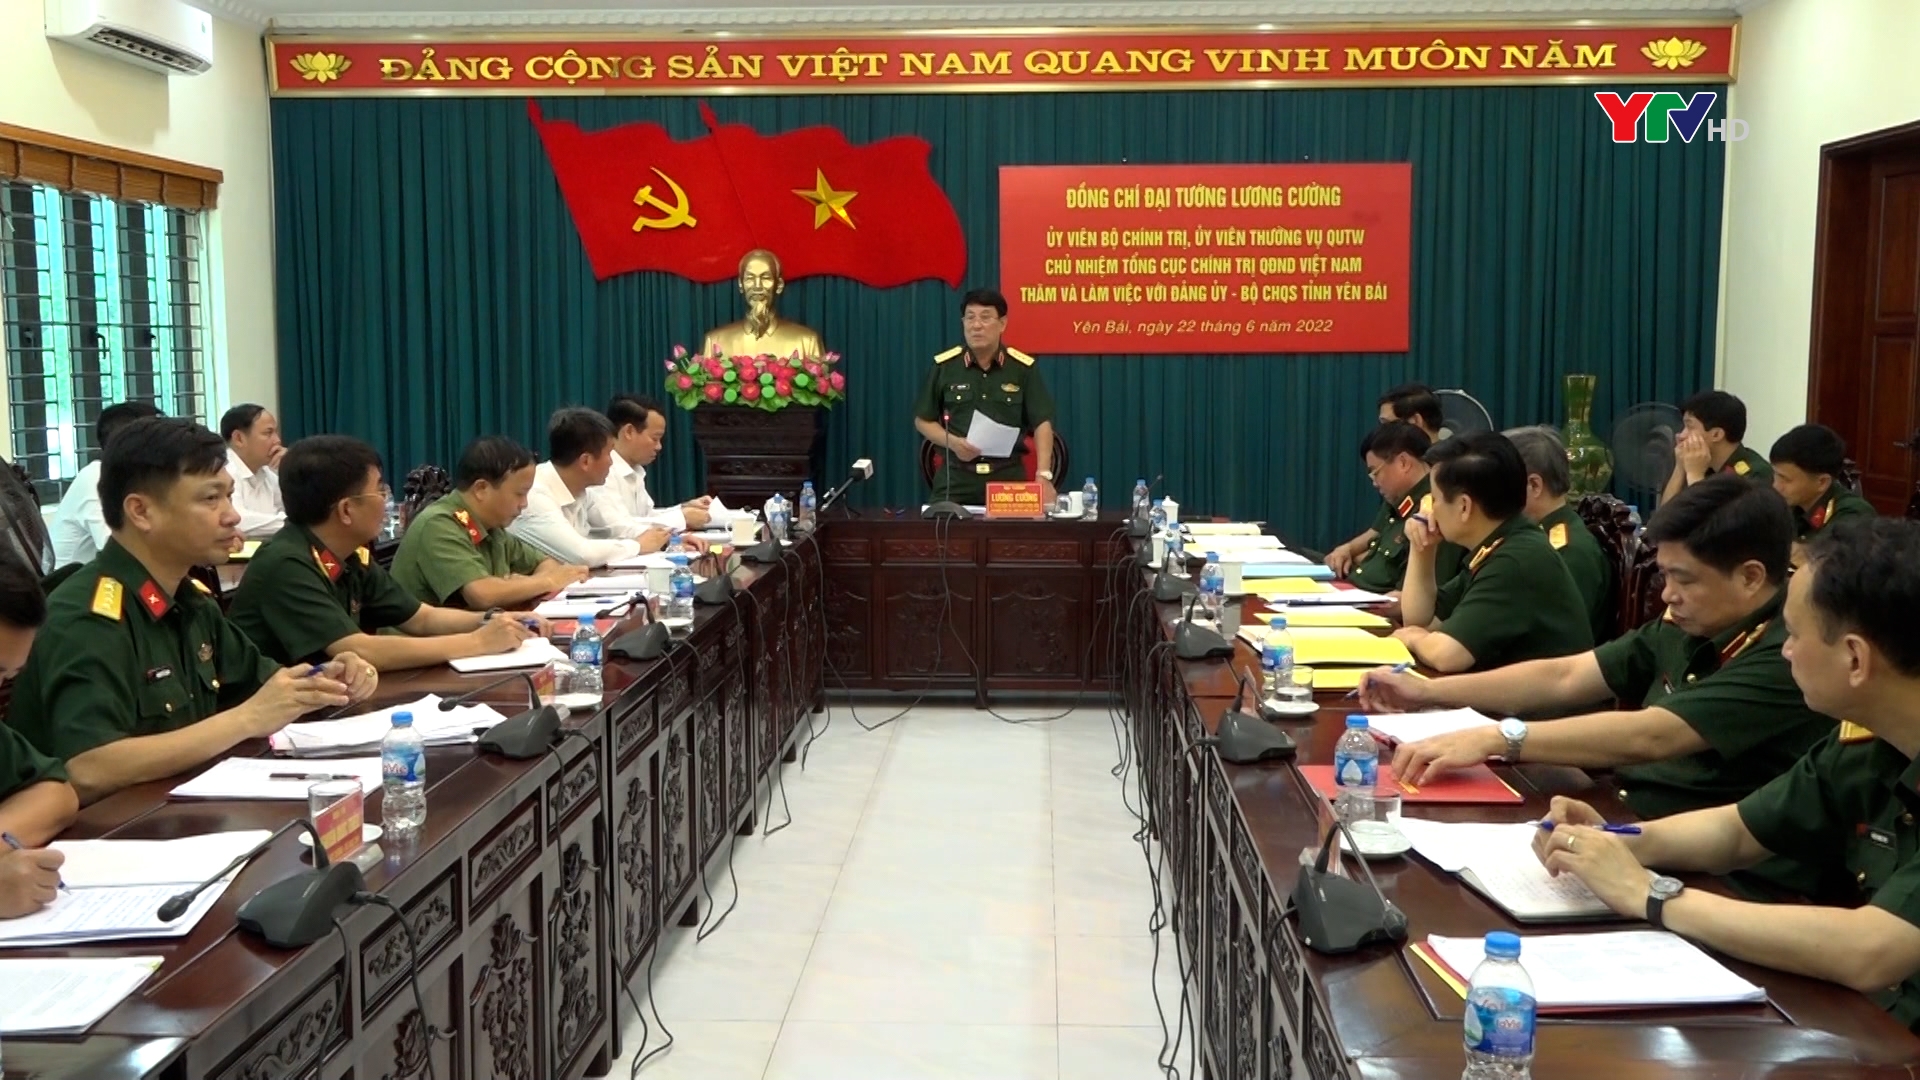 Đại tướng Lương Cường - Chủ nhiệm Tổng cục Chính trị QĐNDVN làm việc tại Bộ Chỉ huy Quân sự tỉnh Yên Bái